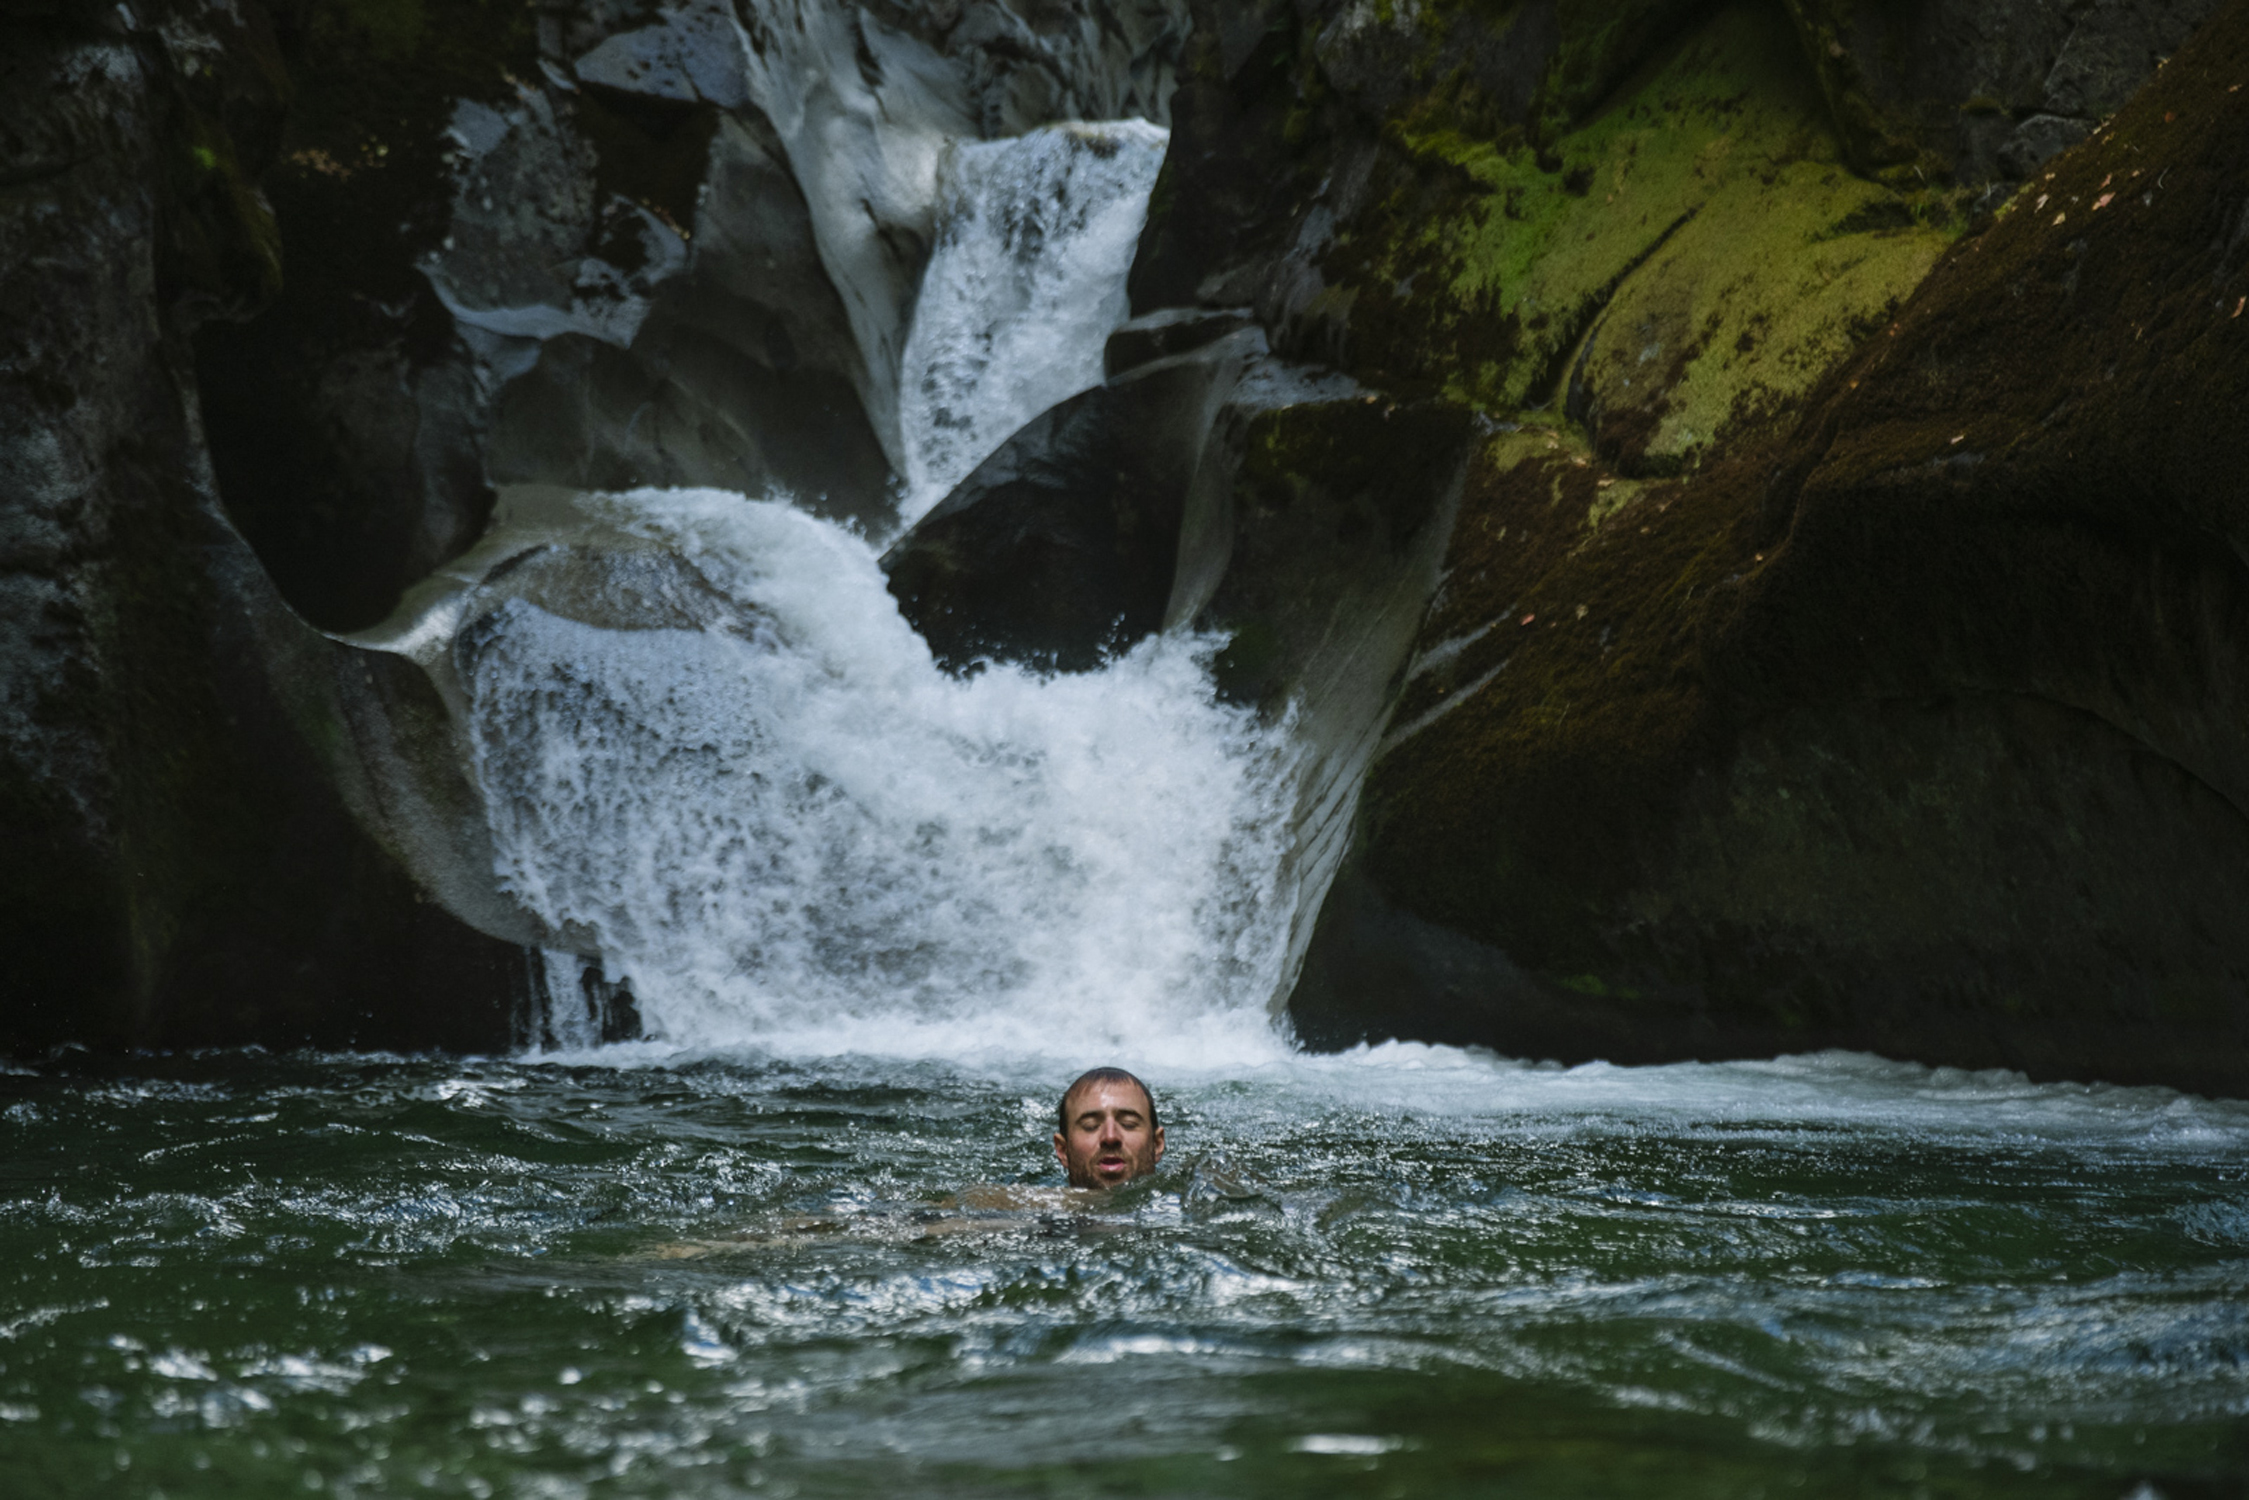 Kurt Sorge wskakujący do rzeki, aby się schłodzić